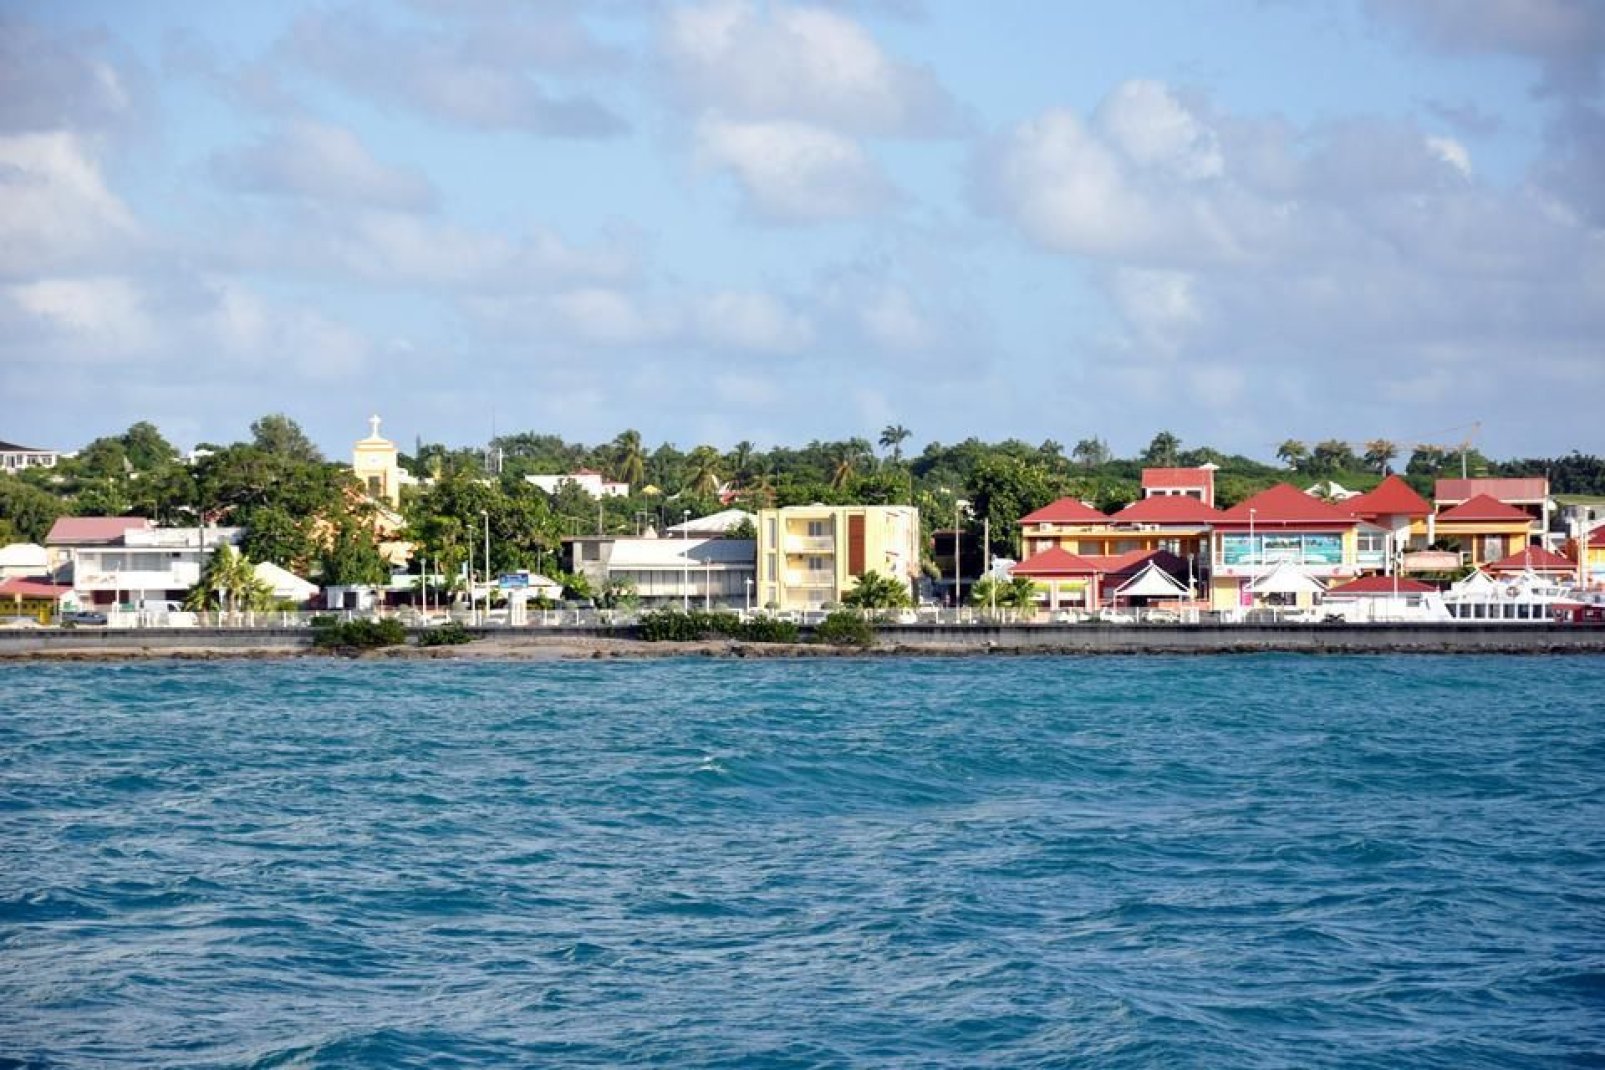 La città è un porto di pescatori dal cui molo partono le imbarcazioni dirette verso le isole Les Saintes, Marie Galante, La Désirade e Petite Terre.